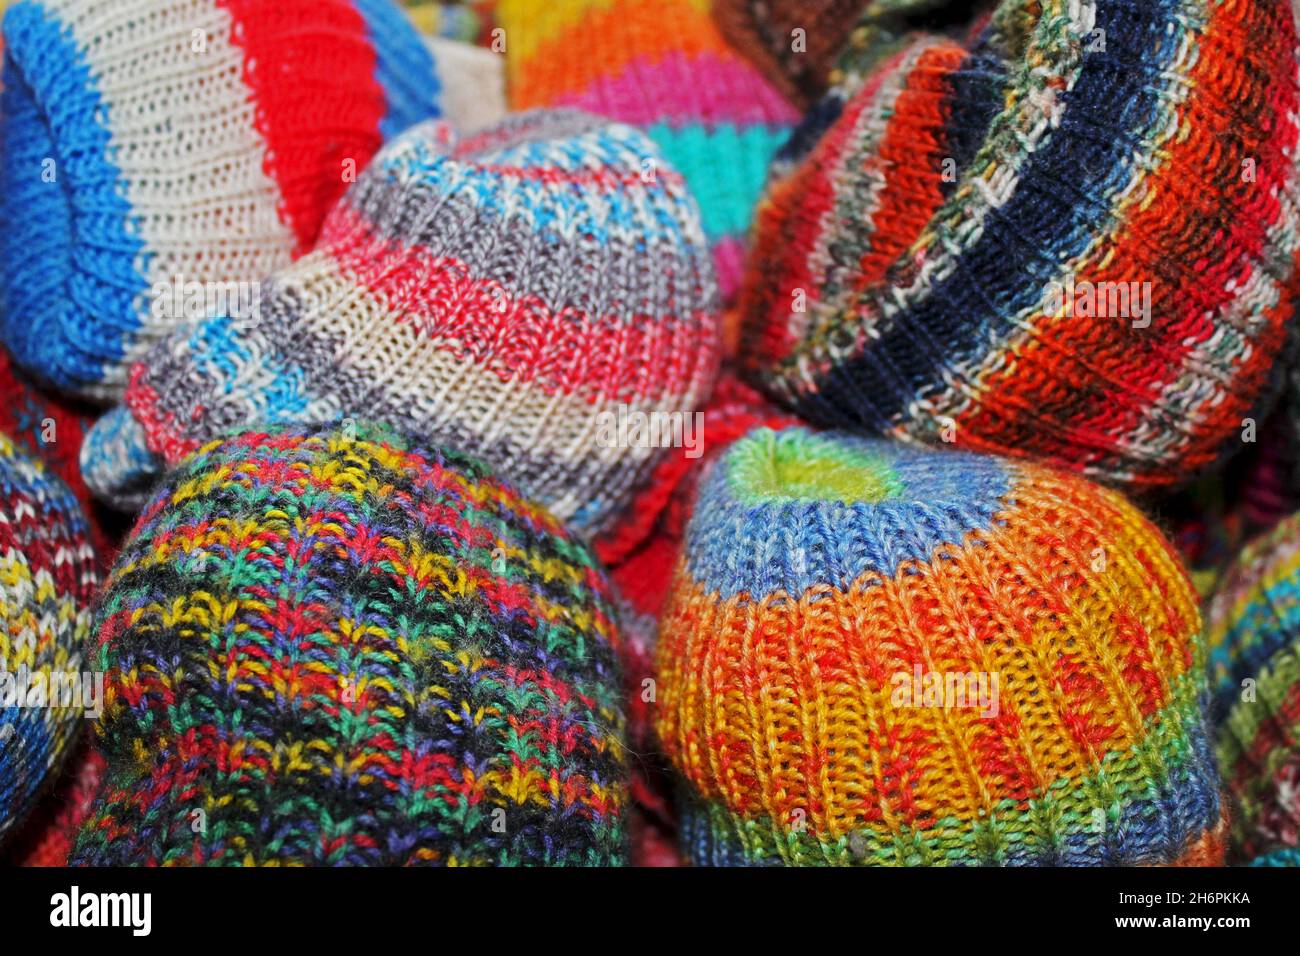 Bunte, selbst gestrickte Wollsocken in verschiedenen Mustern und Farben. Foto Stock